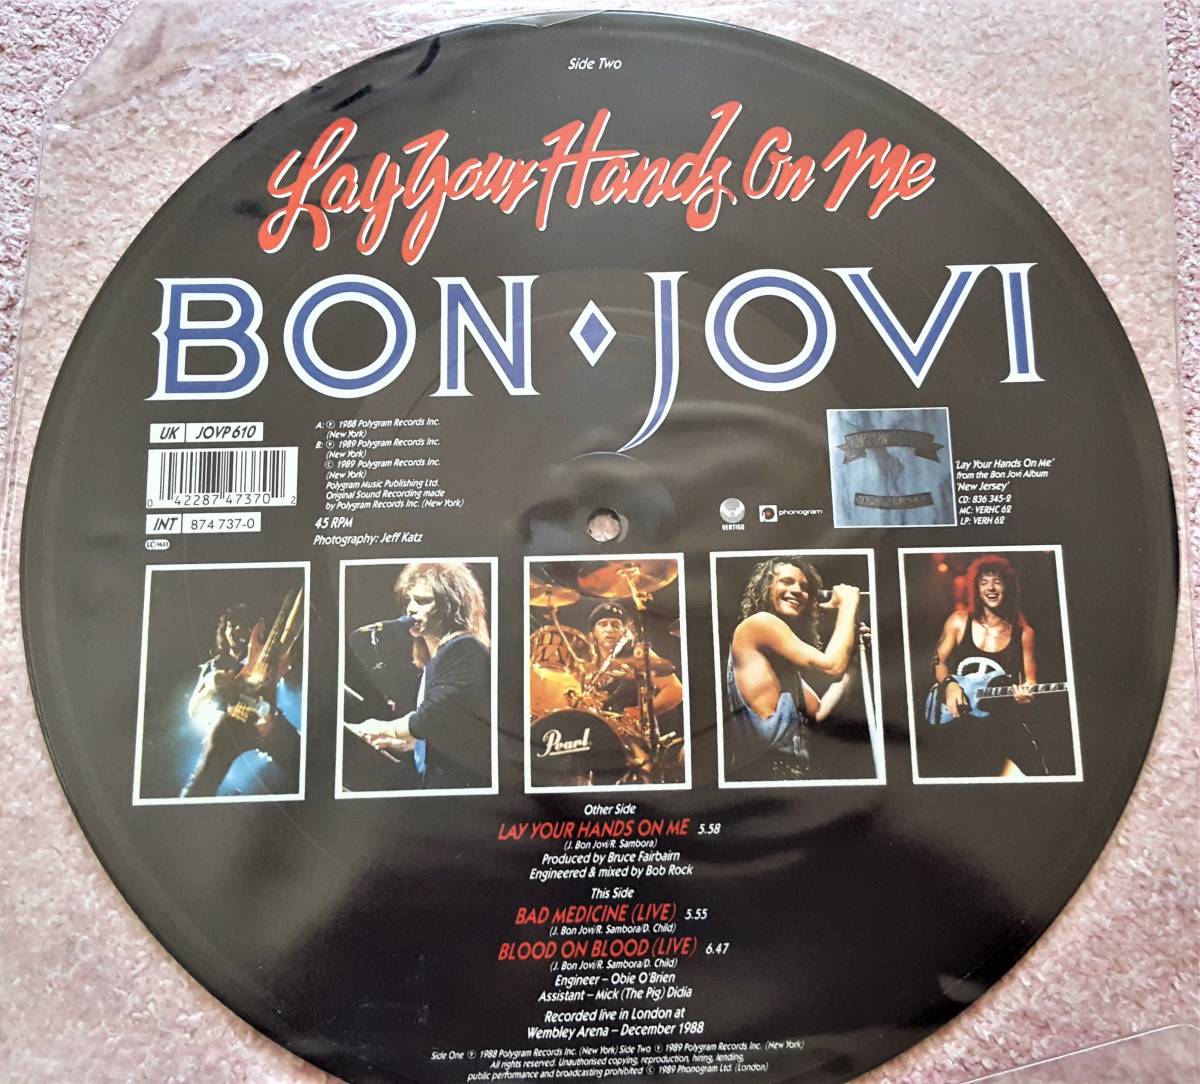 BON JOVI　ボン・ジョヴィ　Lay Your Hands On Me　UK盤 10” シングルレコード　JOVP 610　：　Bad Medicine 他 ライブバージョン収録_画像6